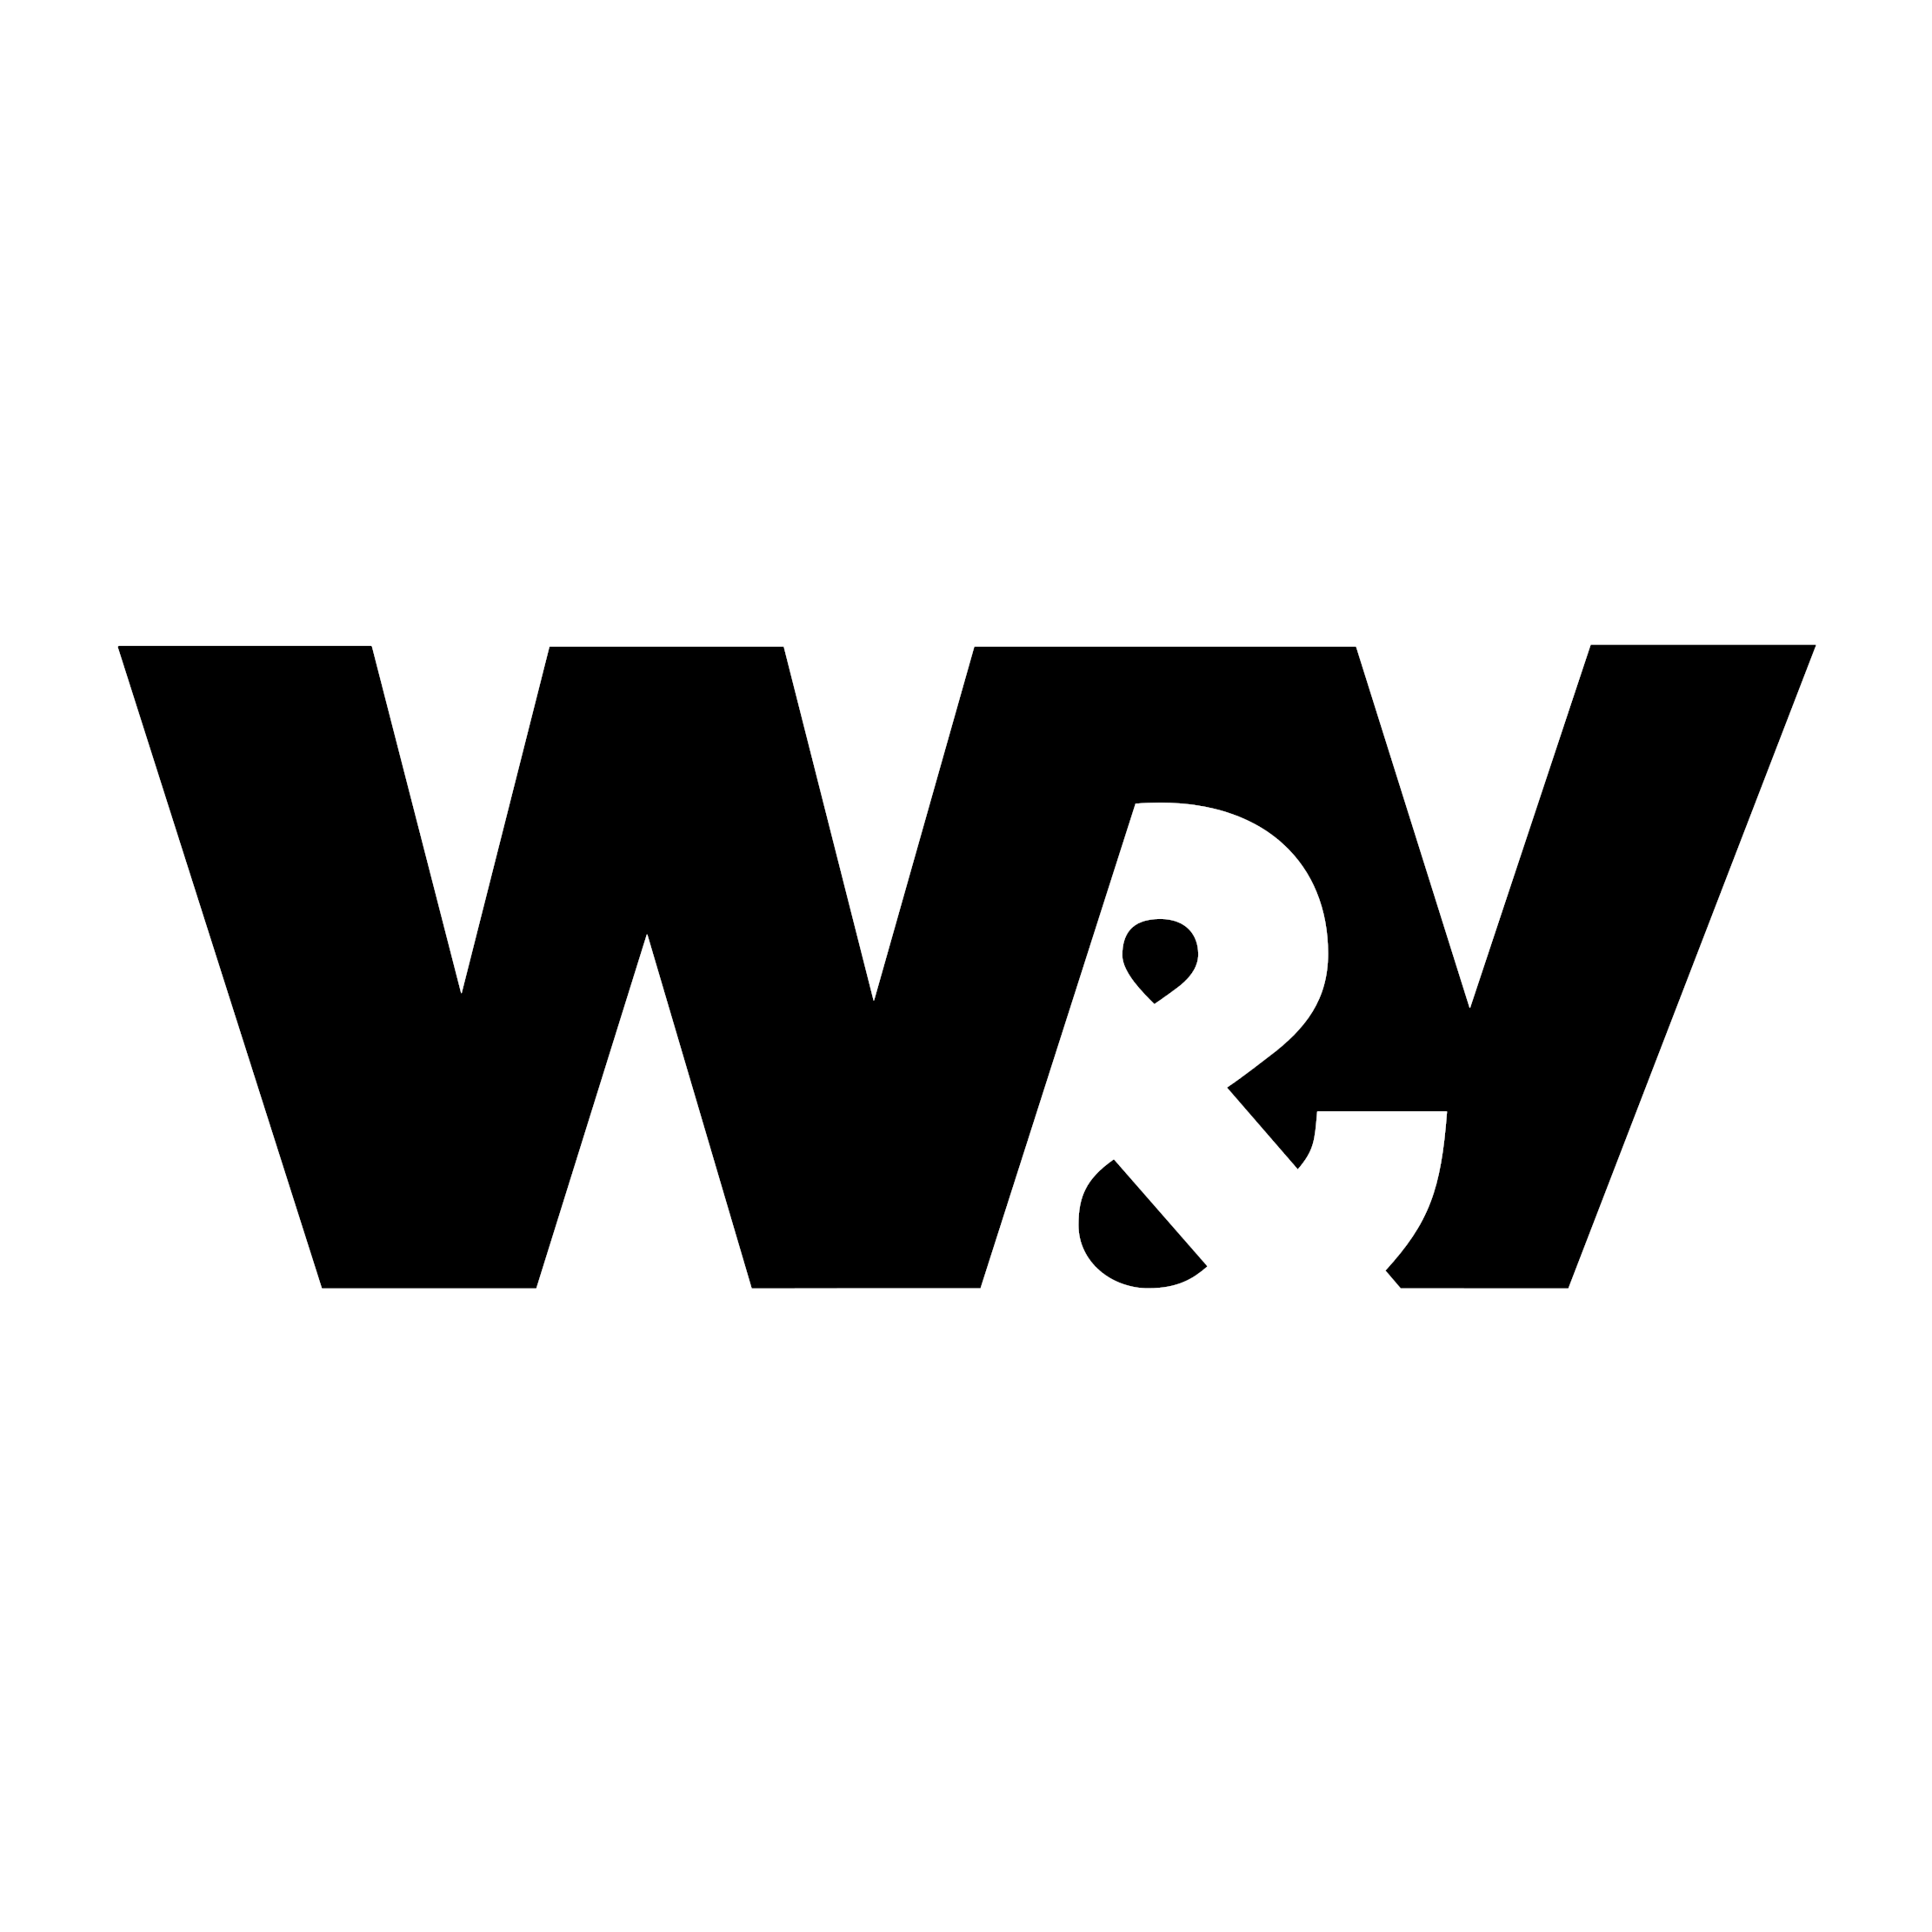 W&V Podcast Day 2022 - der Online-Event für Podcast-Marketing